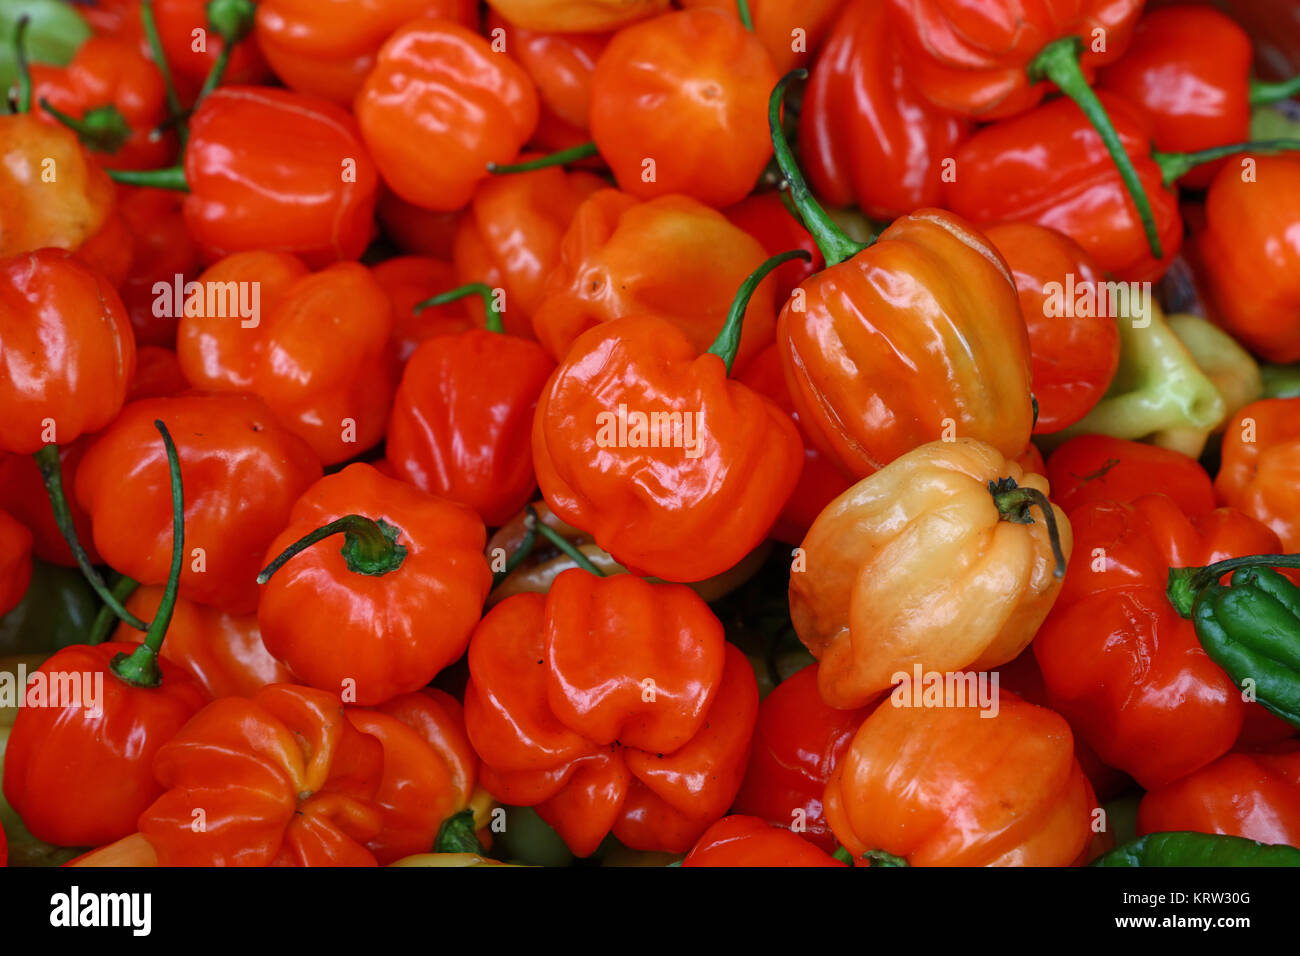 Sweet hot chili habanero orange peppers close up Stock Photo